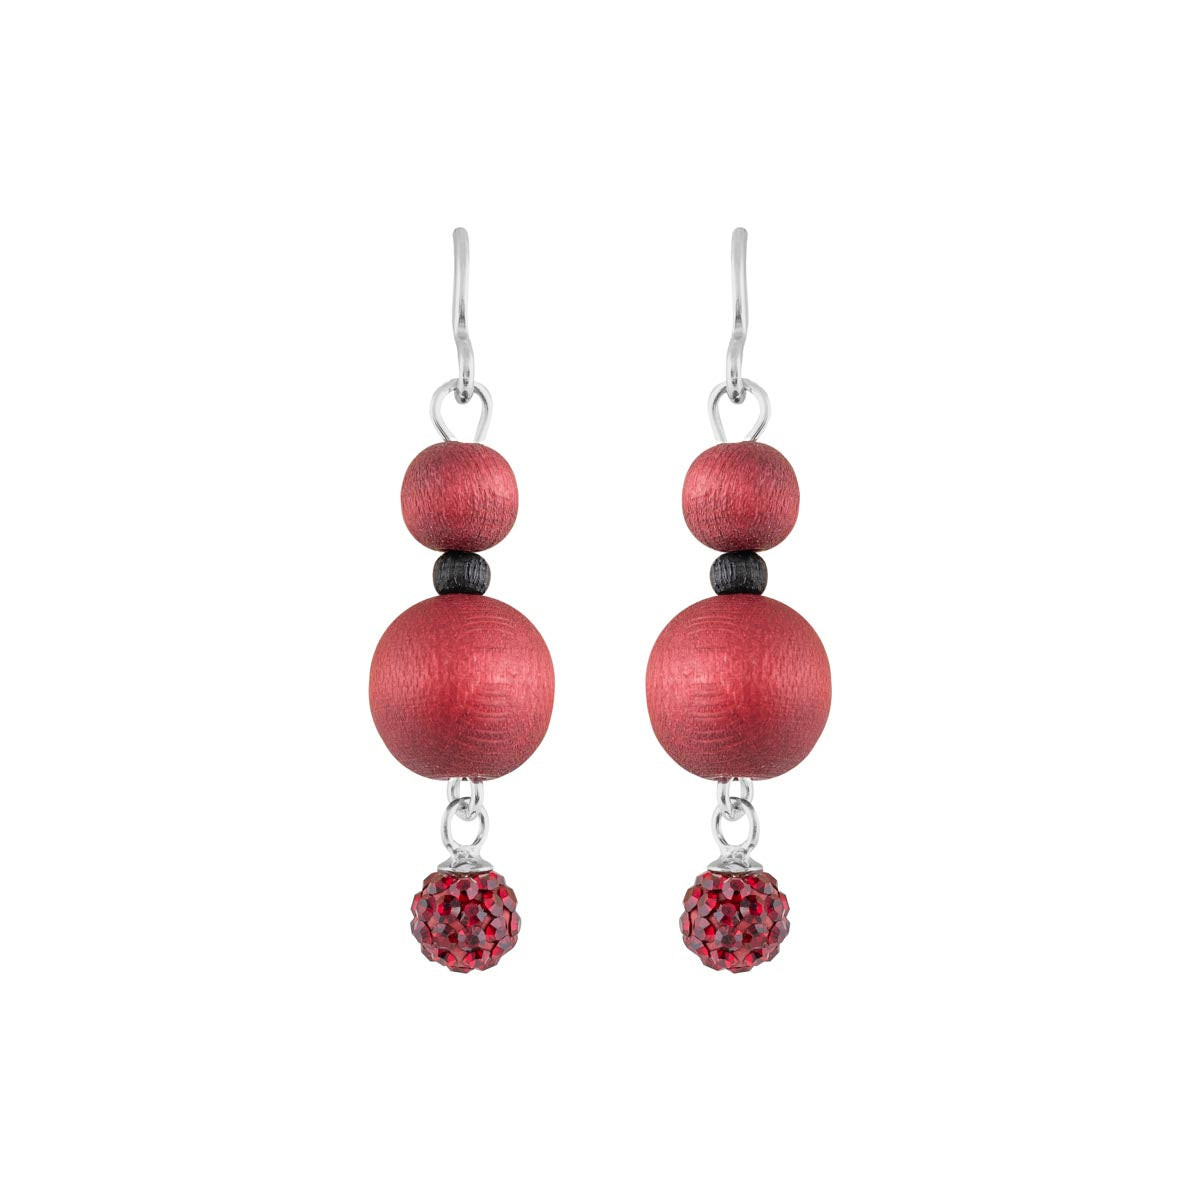 Tuike earrings, wine red